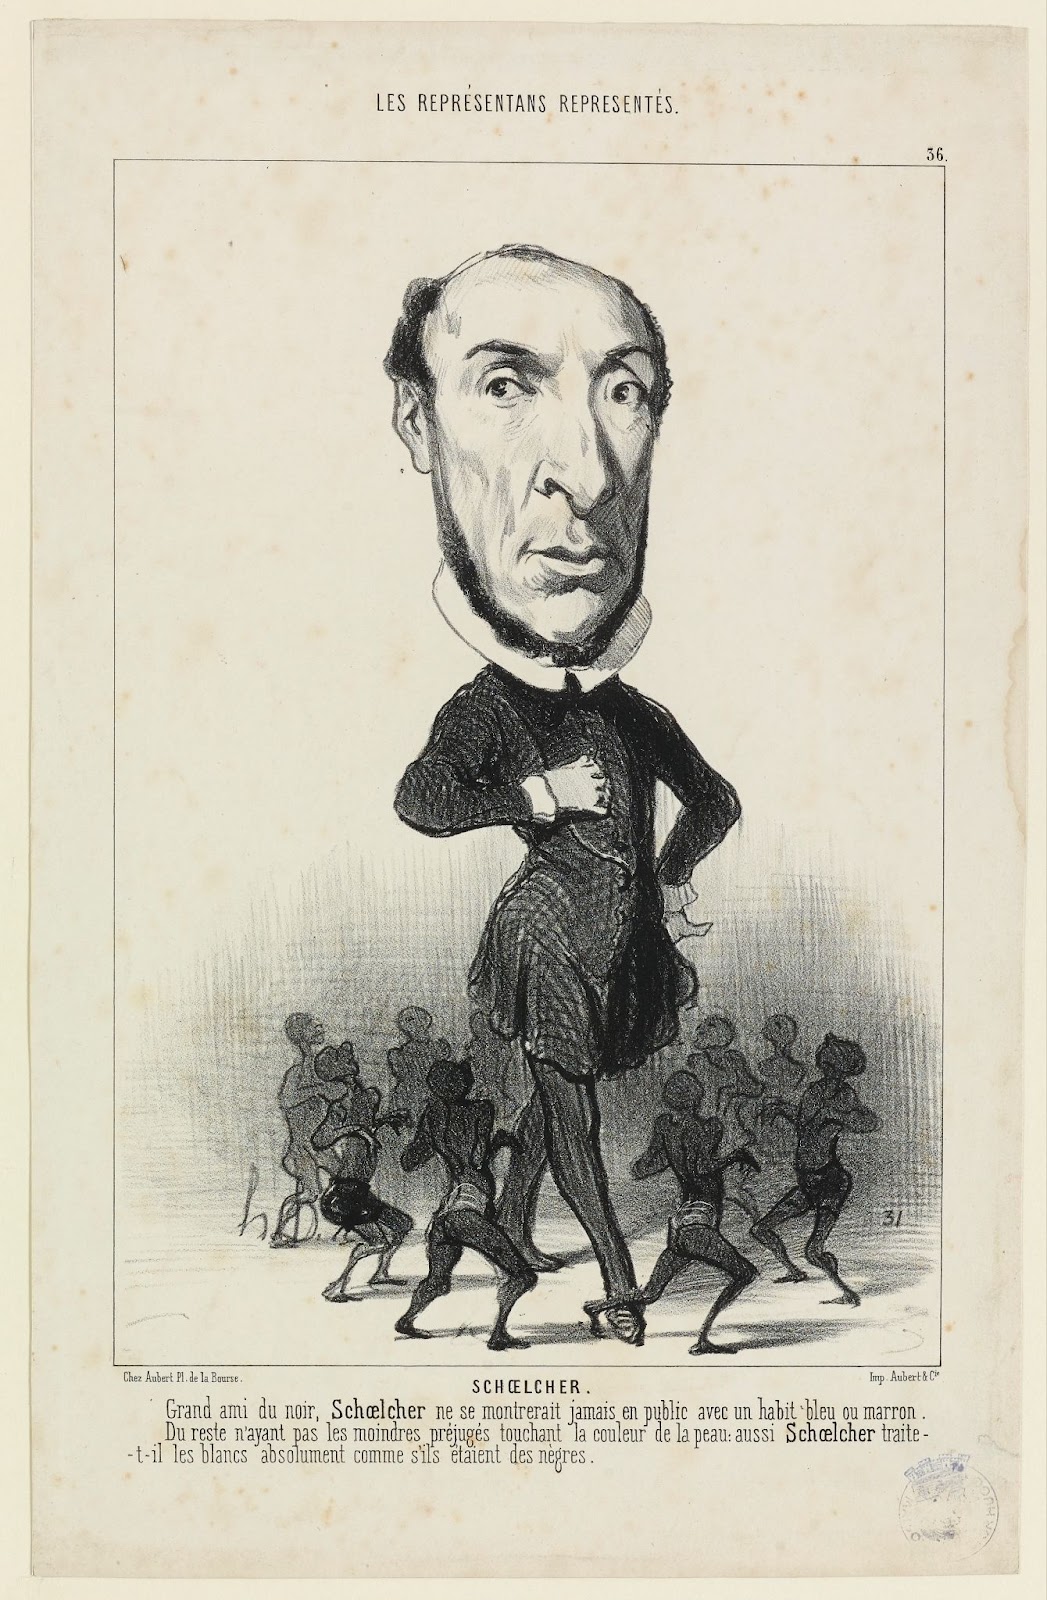 Estampe d'Honoré Daumier représentant Schoelcher avec en légénde "Grand ami du noir, Schoelcher ne se montrerait jamais en public avec un habit bleu ou marron. Du reste n'ayant pas les moindres préjugés touchant la couleur de la peau aussi Schoelcher traite-t-il les blancs absolument comme s'ils étaient des nègres"